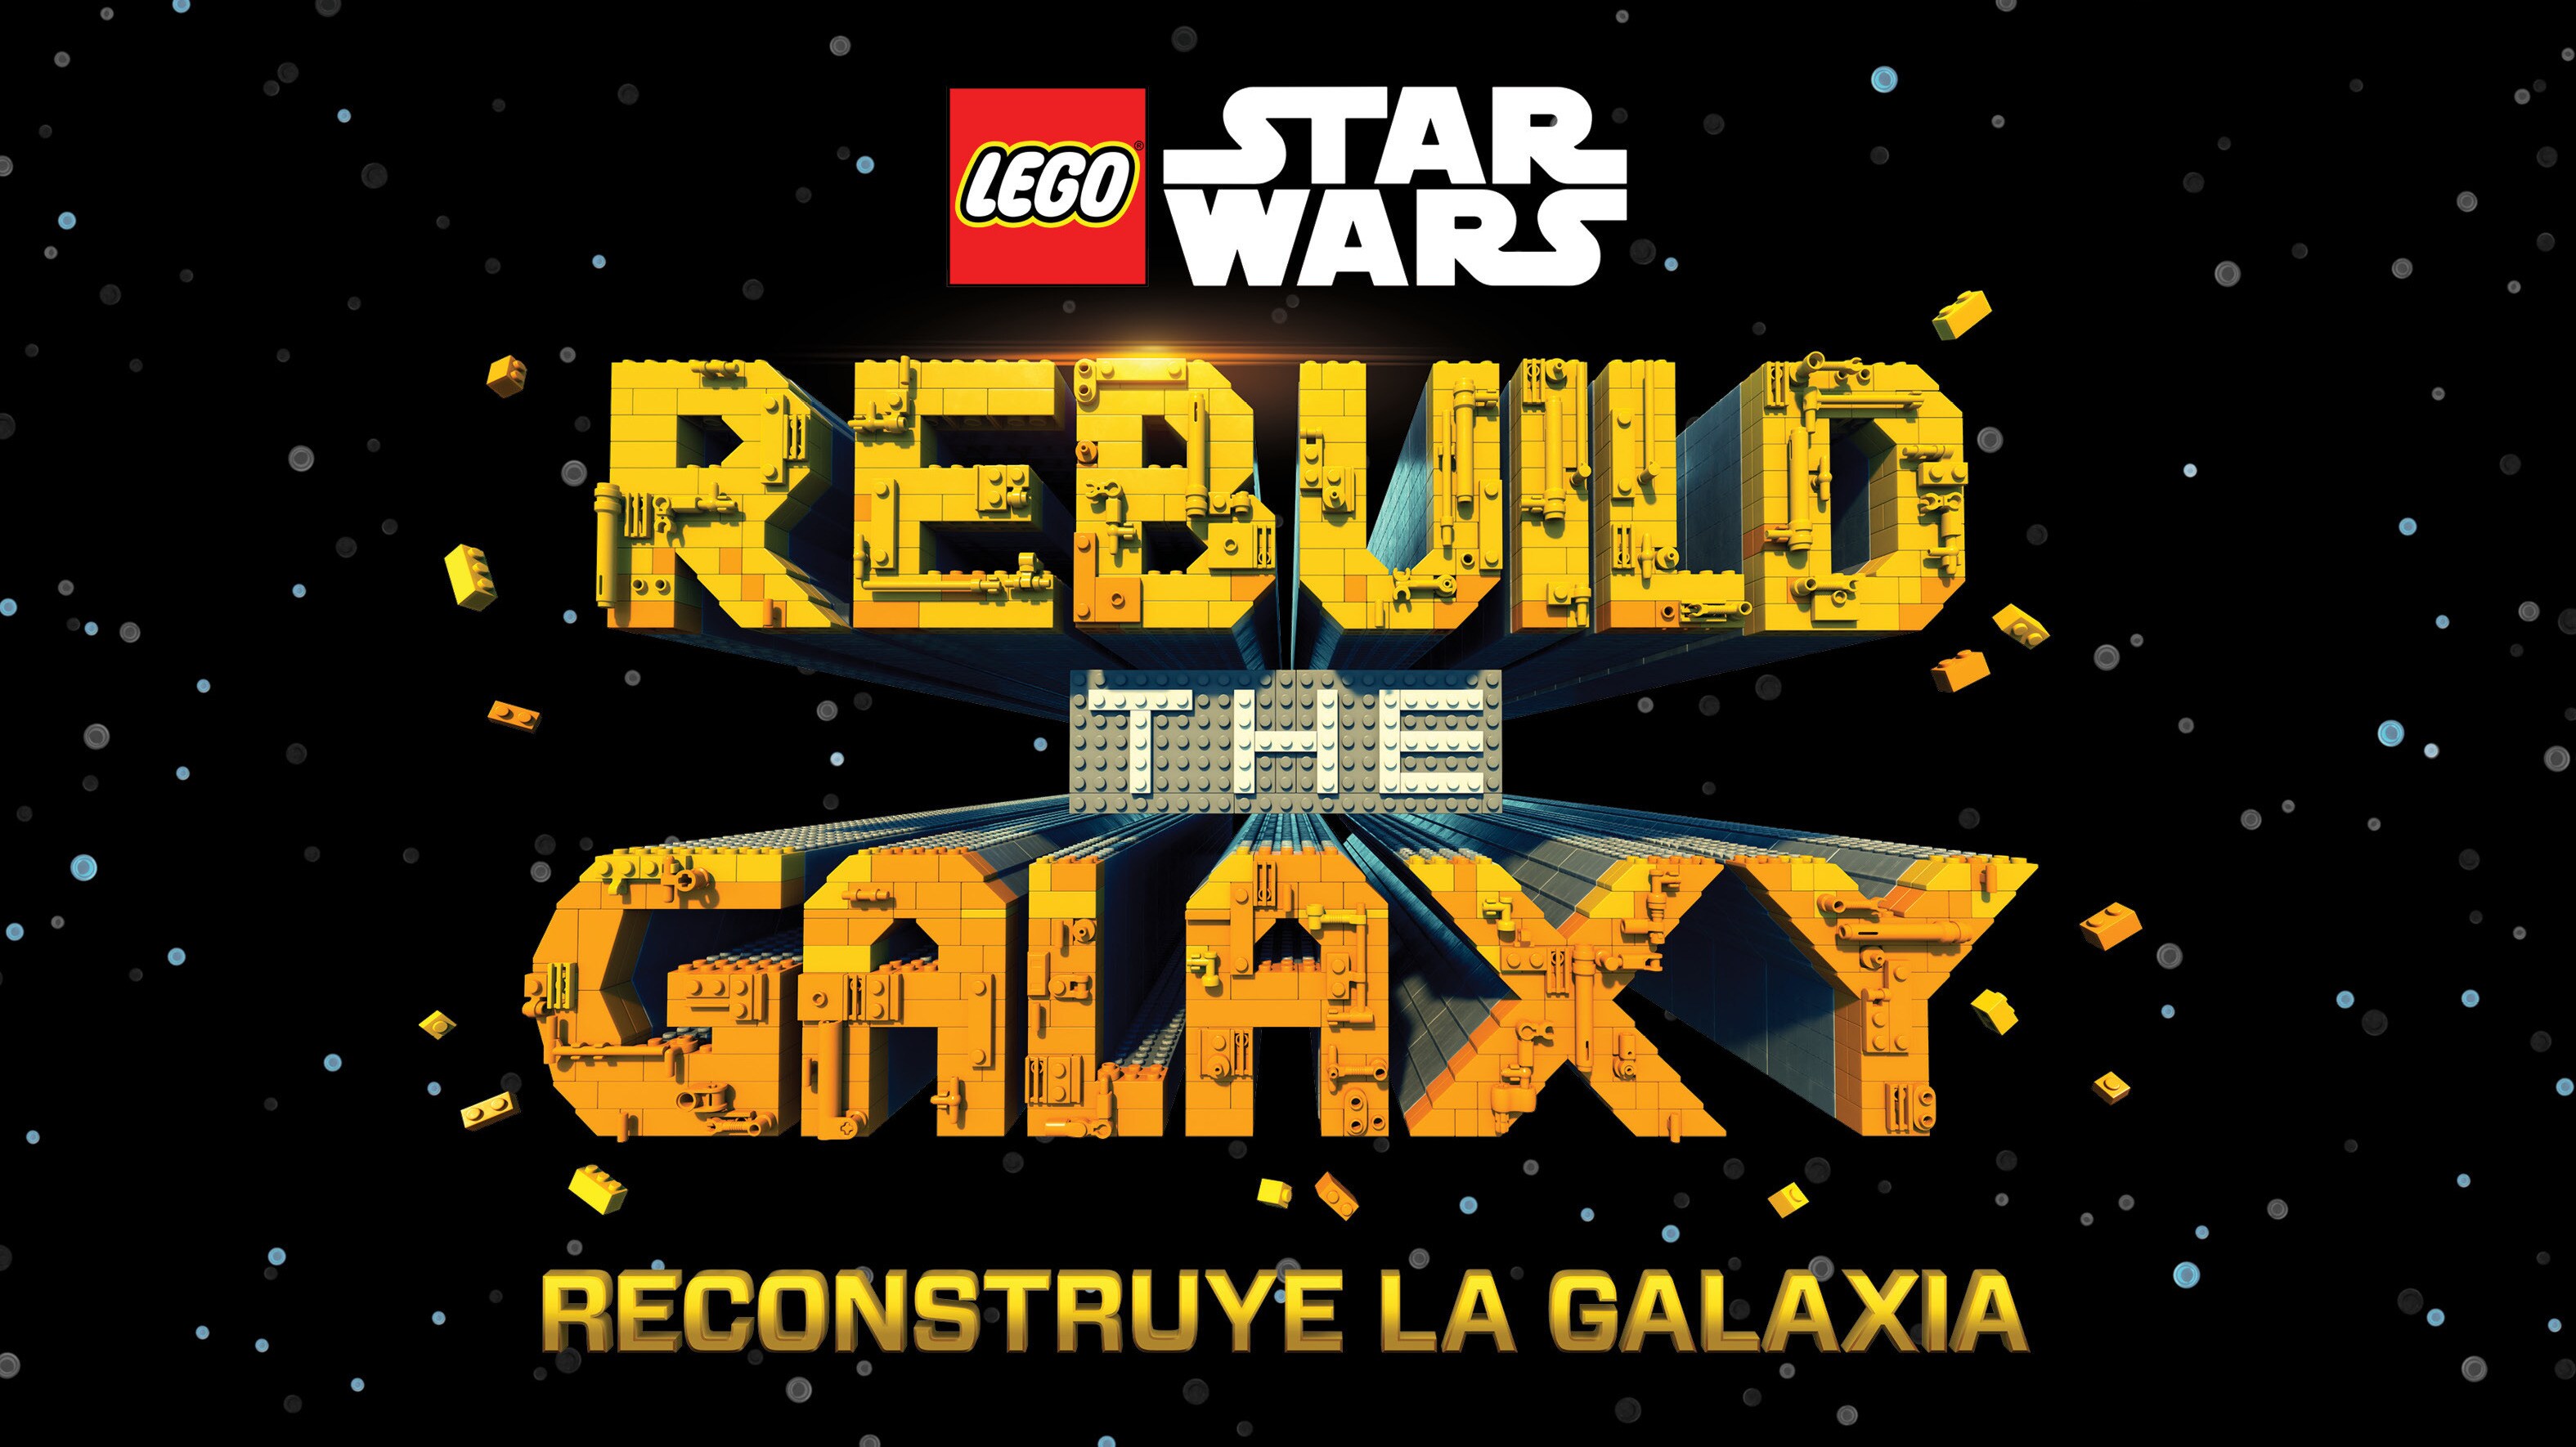 "LEGO® STAR WARS: RECONSTRUYE LA GALAXIA" YA DISPONIBLES EL TEASER Y EL PÓSTER